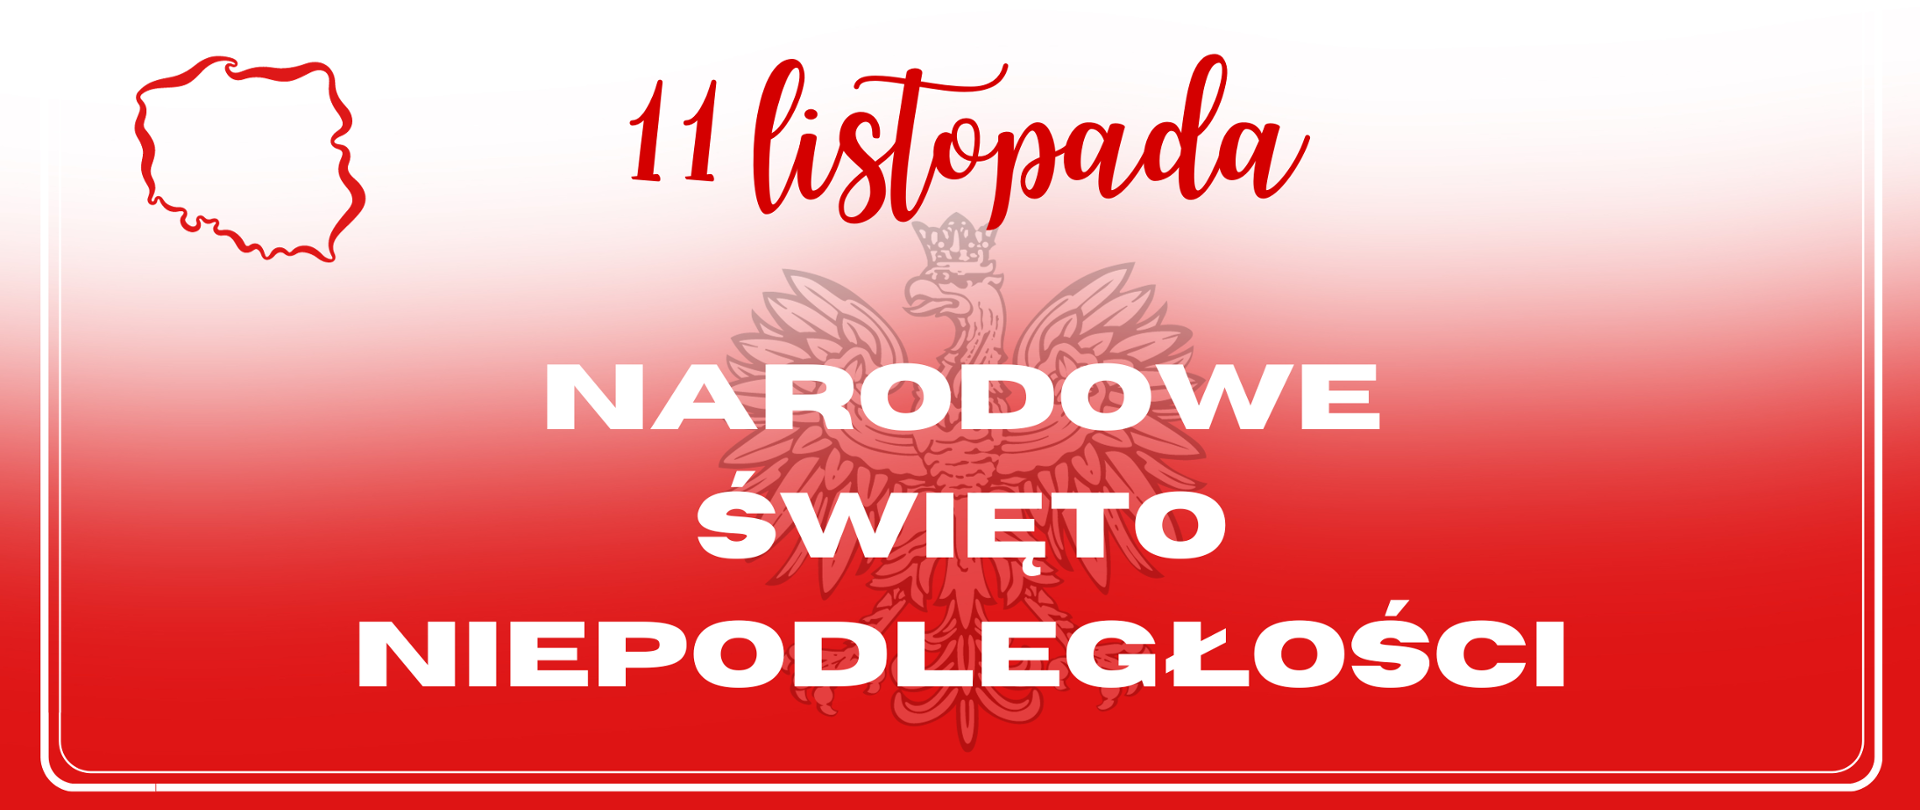 Białoczerwone tło na nim orzeł z godła Polski i kontur Polski oraz tekst: "11 listopada Narodowe Święto Niepodległości"